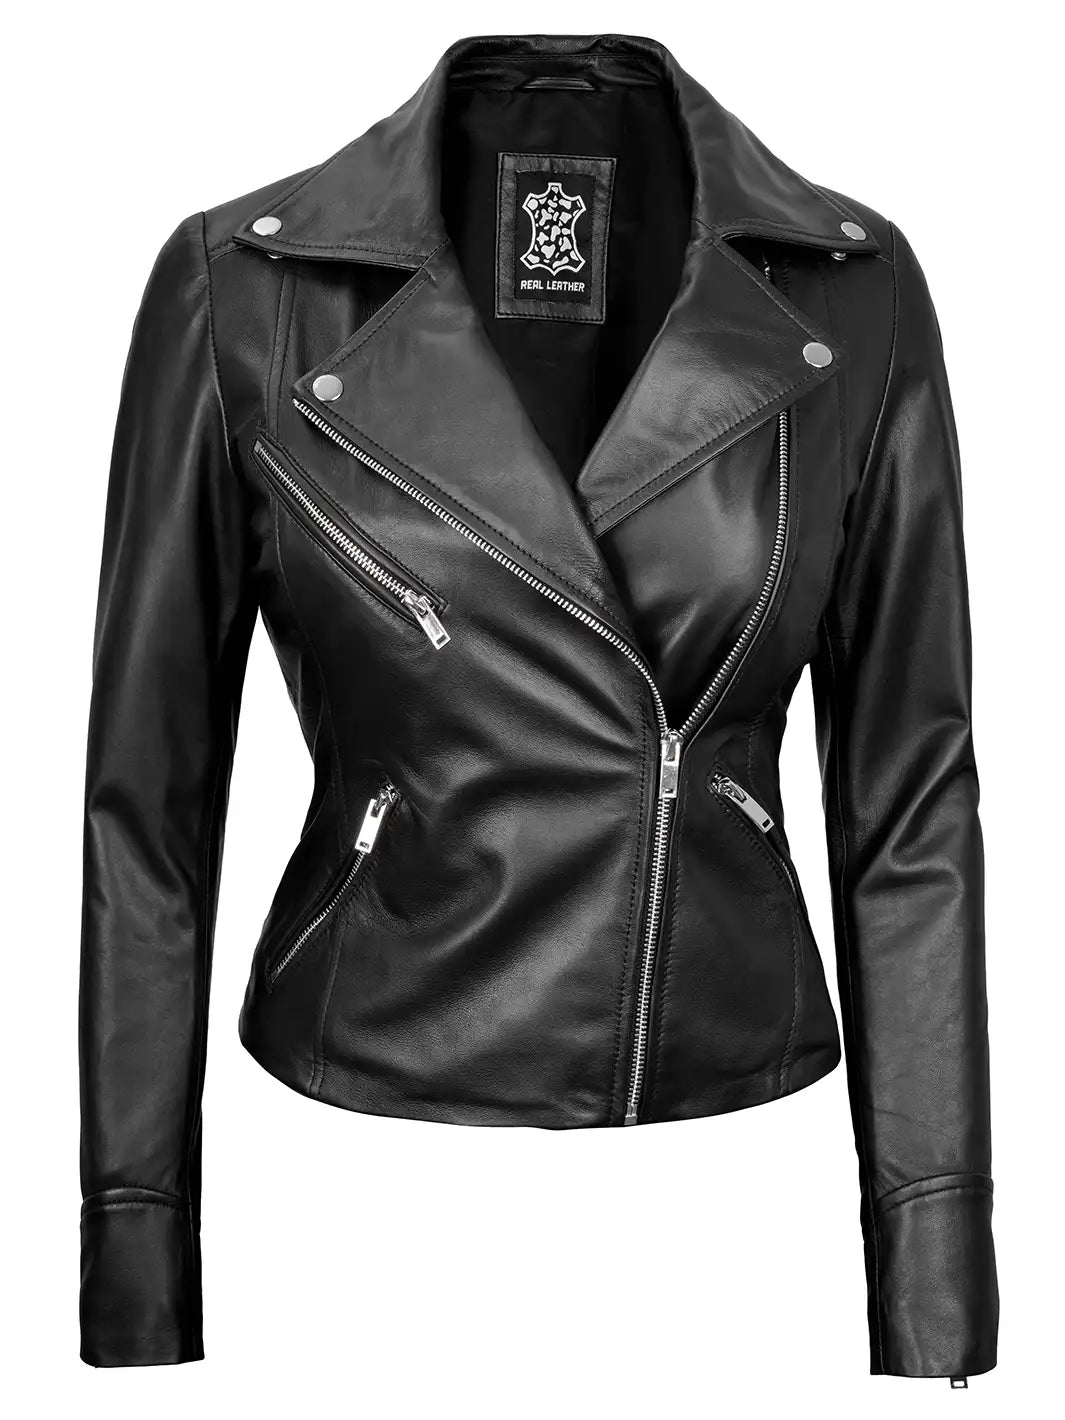 Women black leather bikers jacket